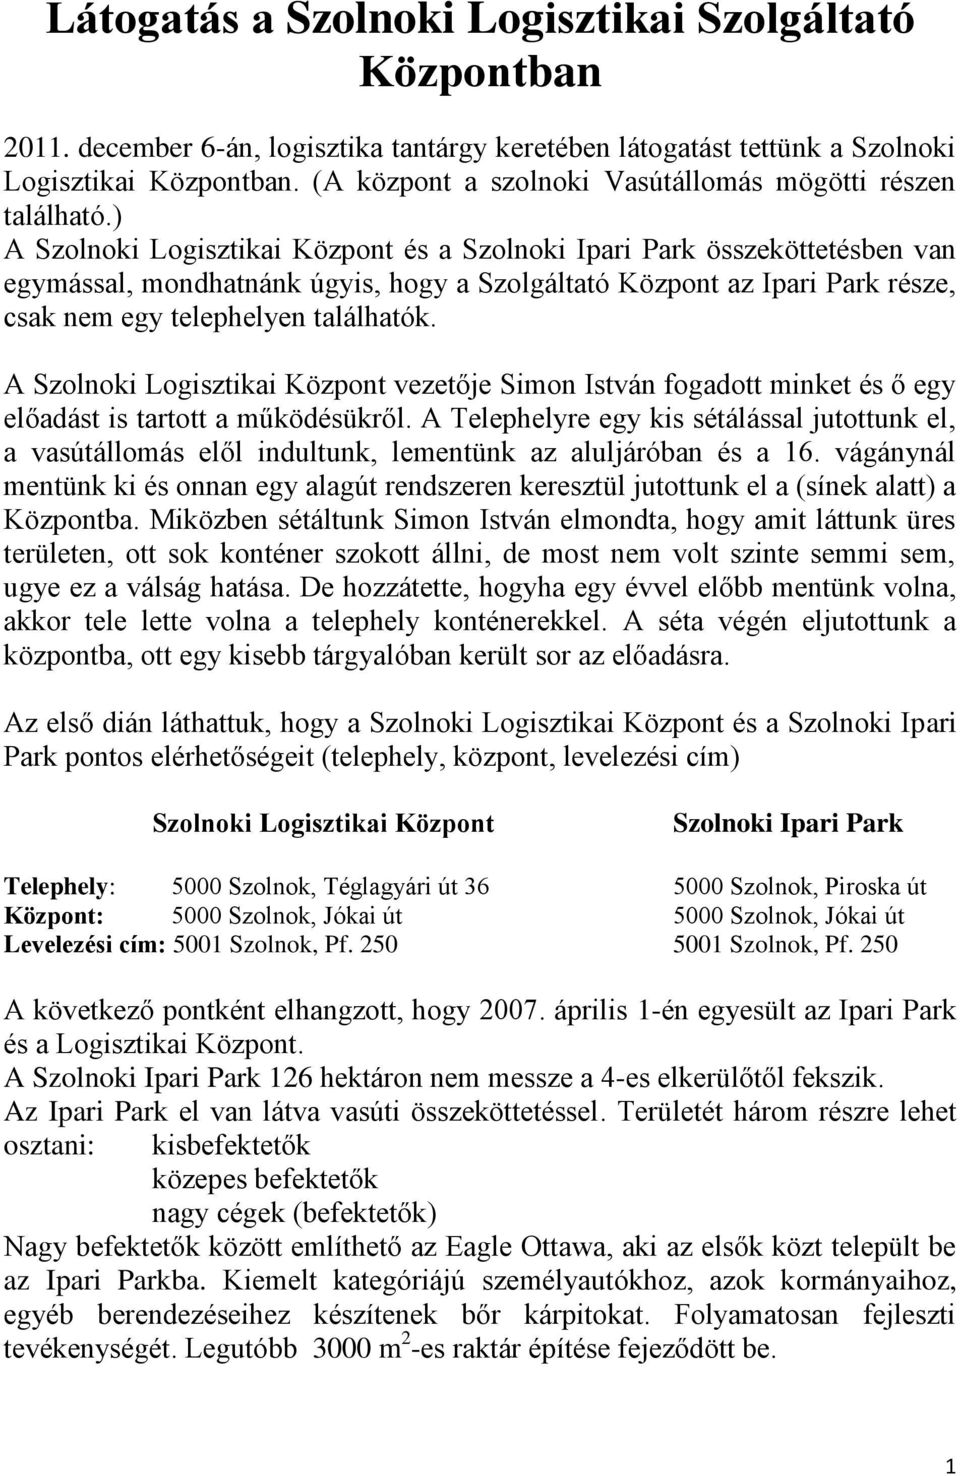 ) A Szolnoki Logisztikai Központ és a Szolnoki Ipari Park összeköttetésben van egymással, mondhatnánk úgyis, hogy a Szolgáltató Központ az Ipari Park része, csak nem egy telephelyen találhatók.